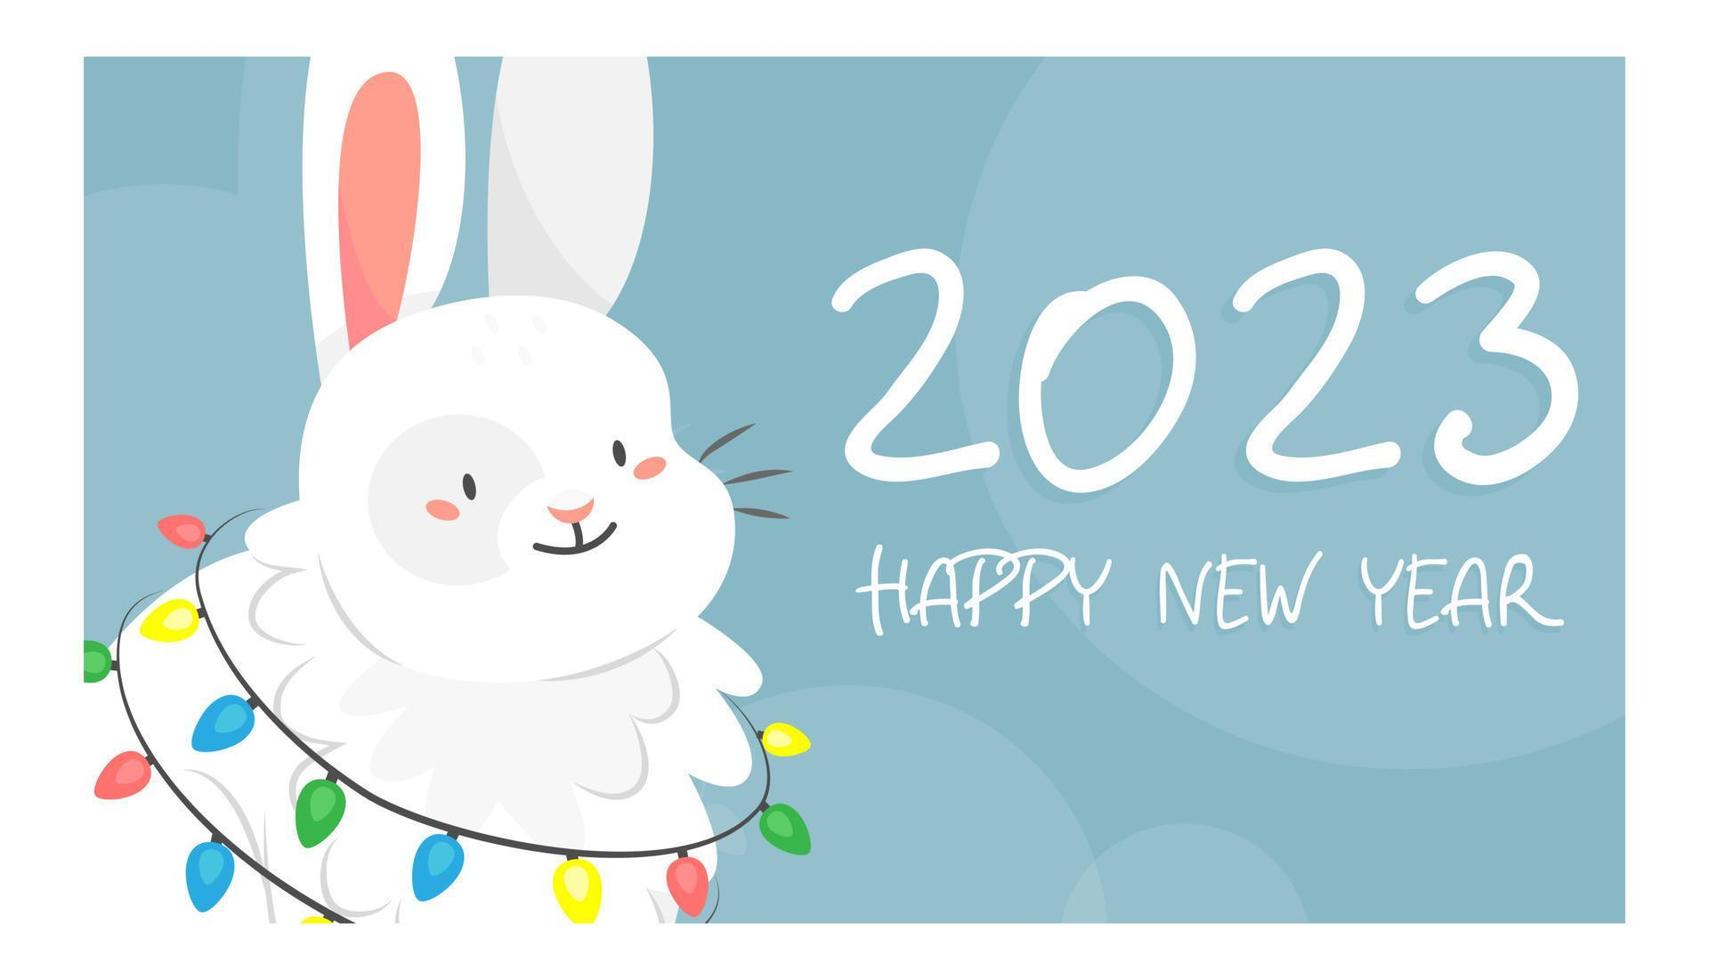 feliz año nuevo 2023 ilustración de plantilla de banner vectorial con lindo conejo blanco con guirnalda en estilo de dibujos animados. año del conejo. plantilla de tarjeta ilustración vectorial vector